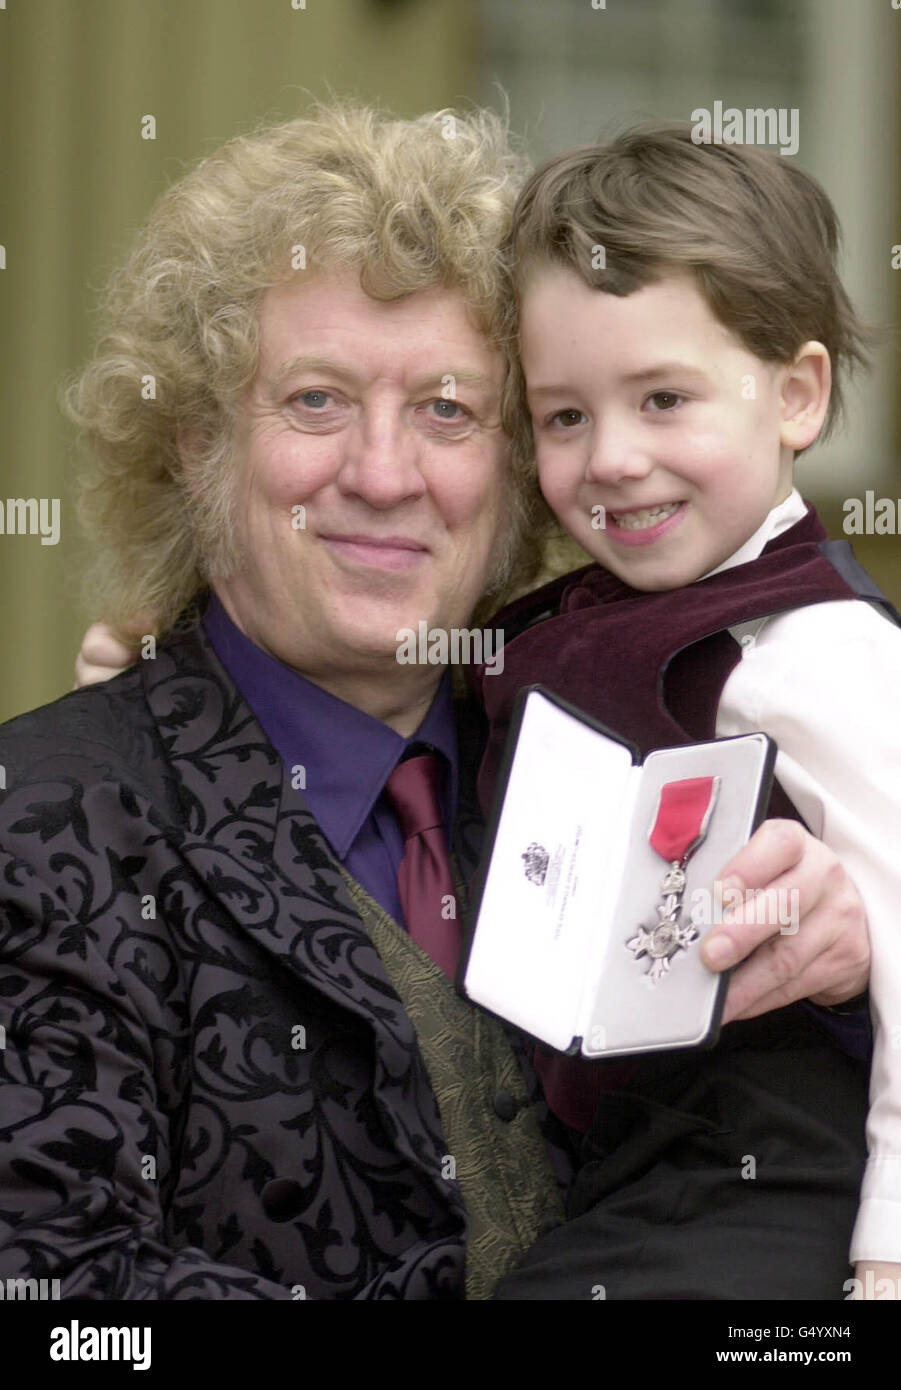 Il musicista Neville (Noddy) Holder della band Slade con suo figlio Django, di 5 anni, ha ricevuto un MBE dal Principe di Galles durante una cerimonia di investitura tenuta a Buckingham Palace. Foto Stock